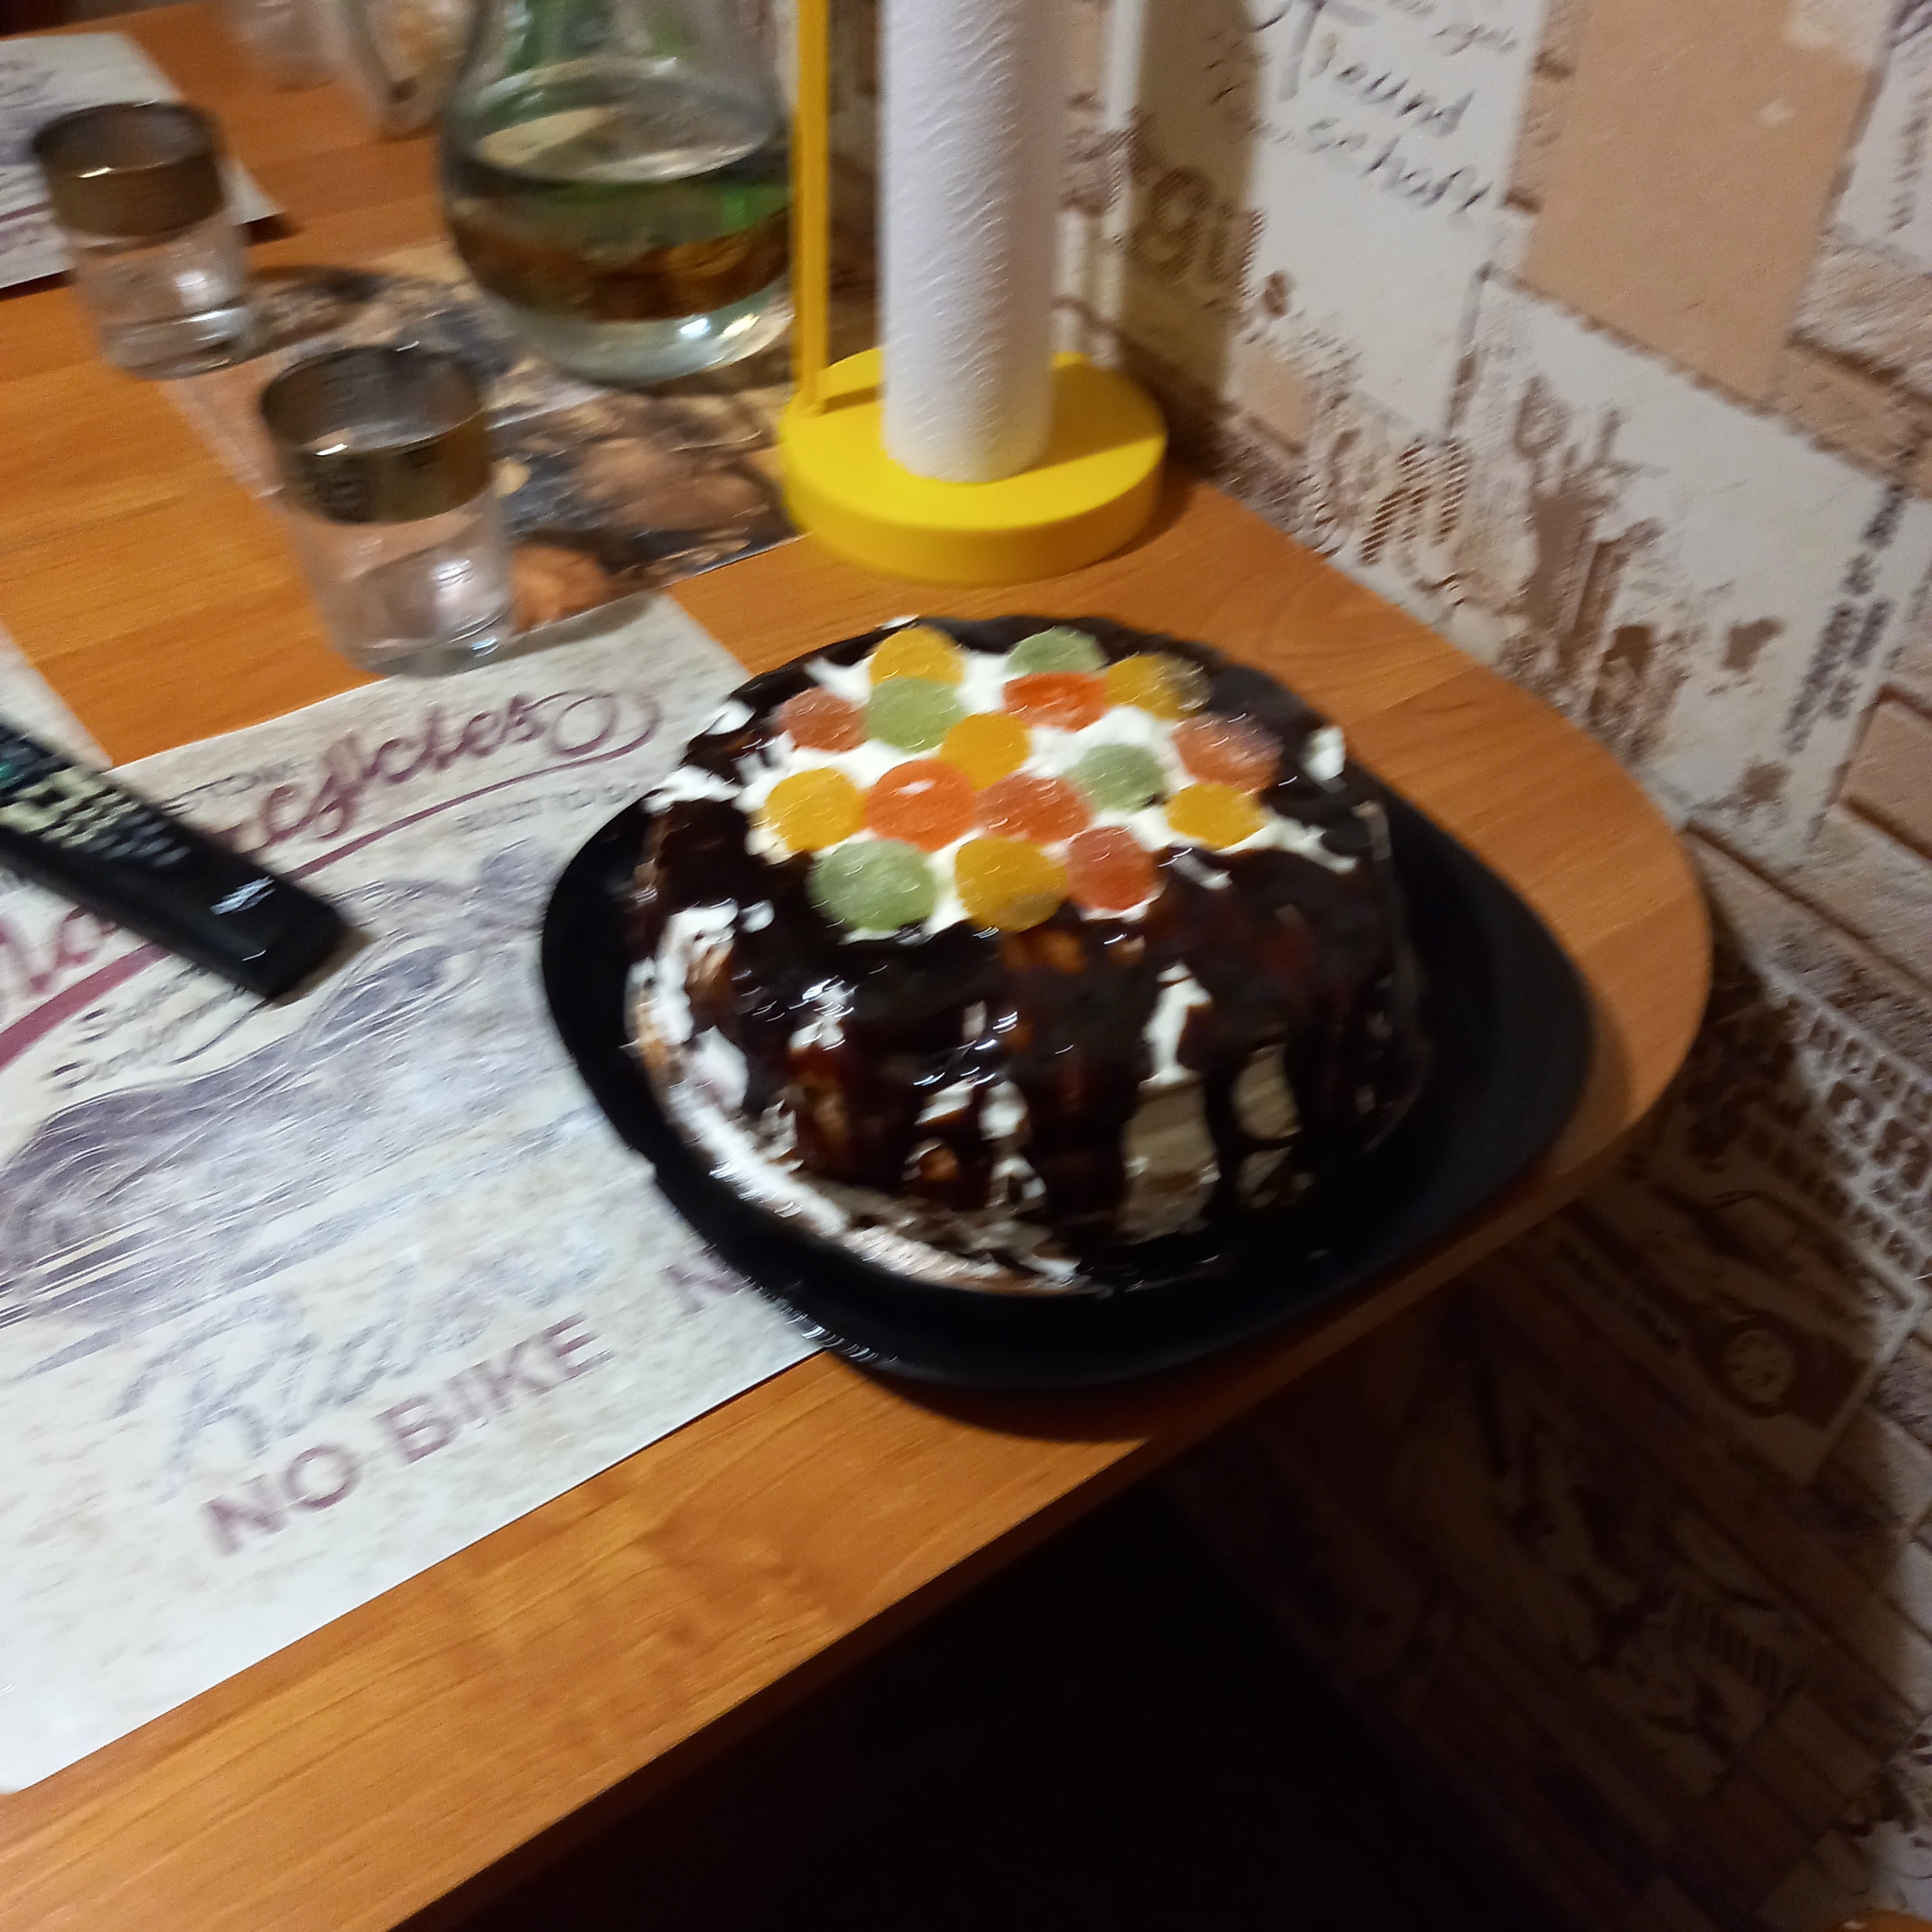 Бисквитный торт со сливками и малиной